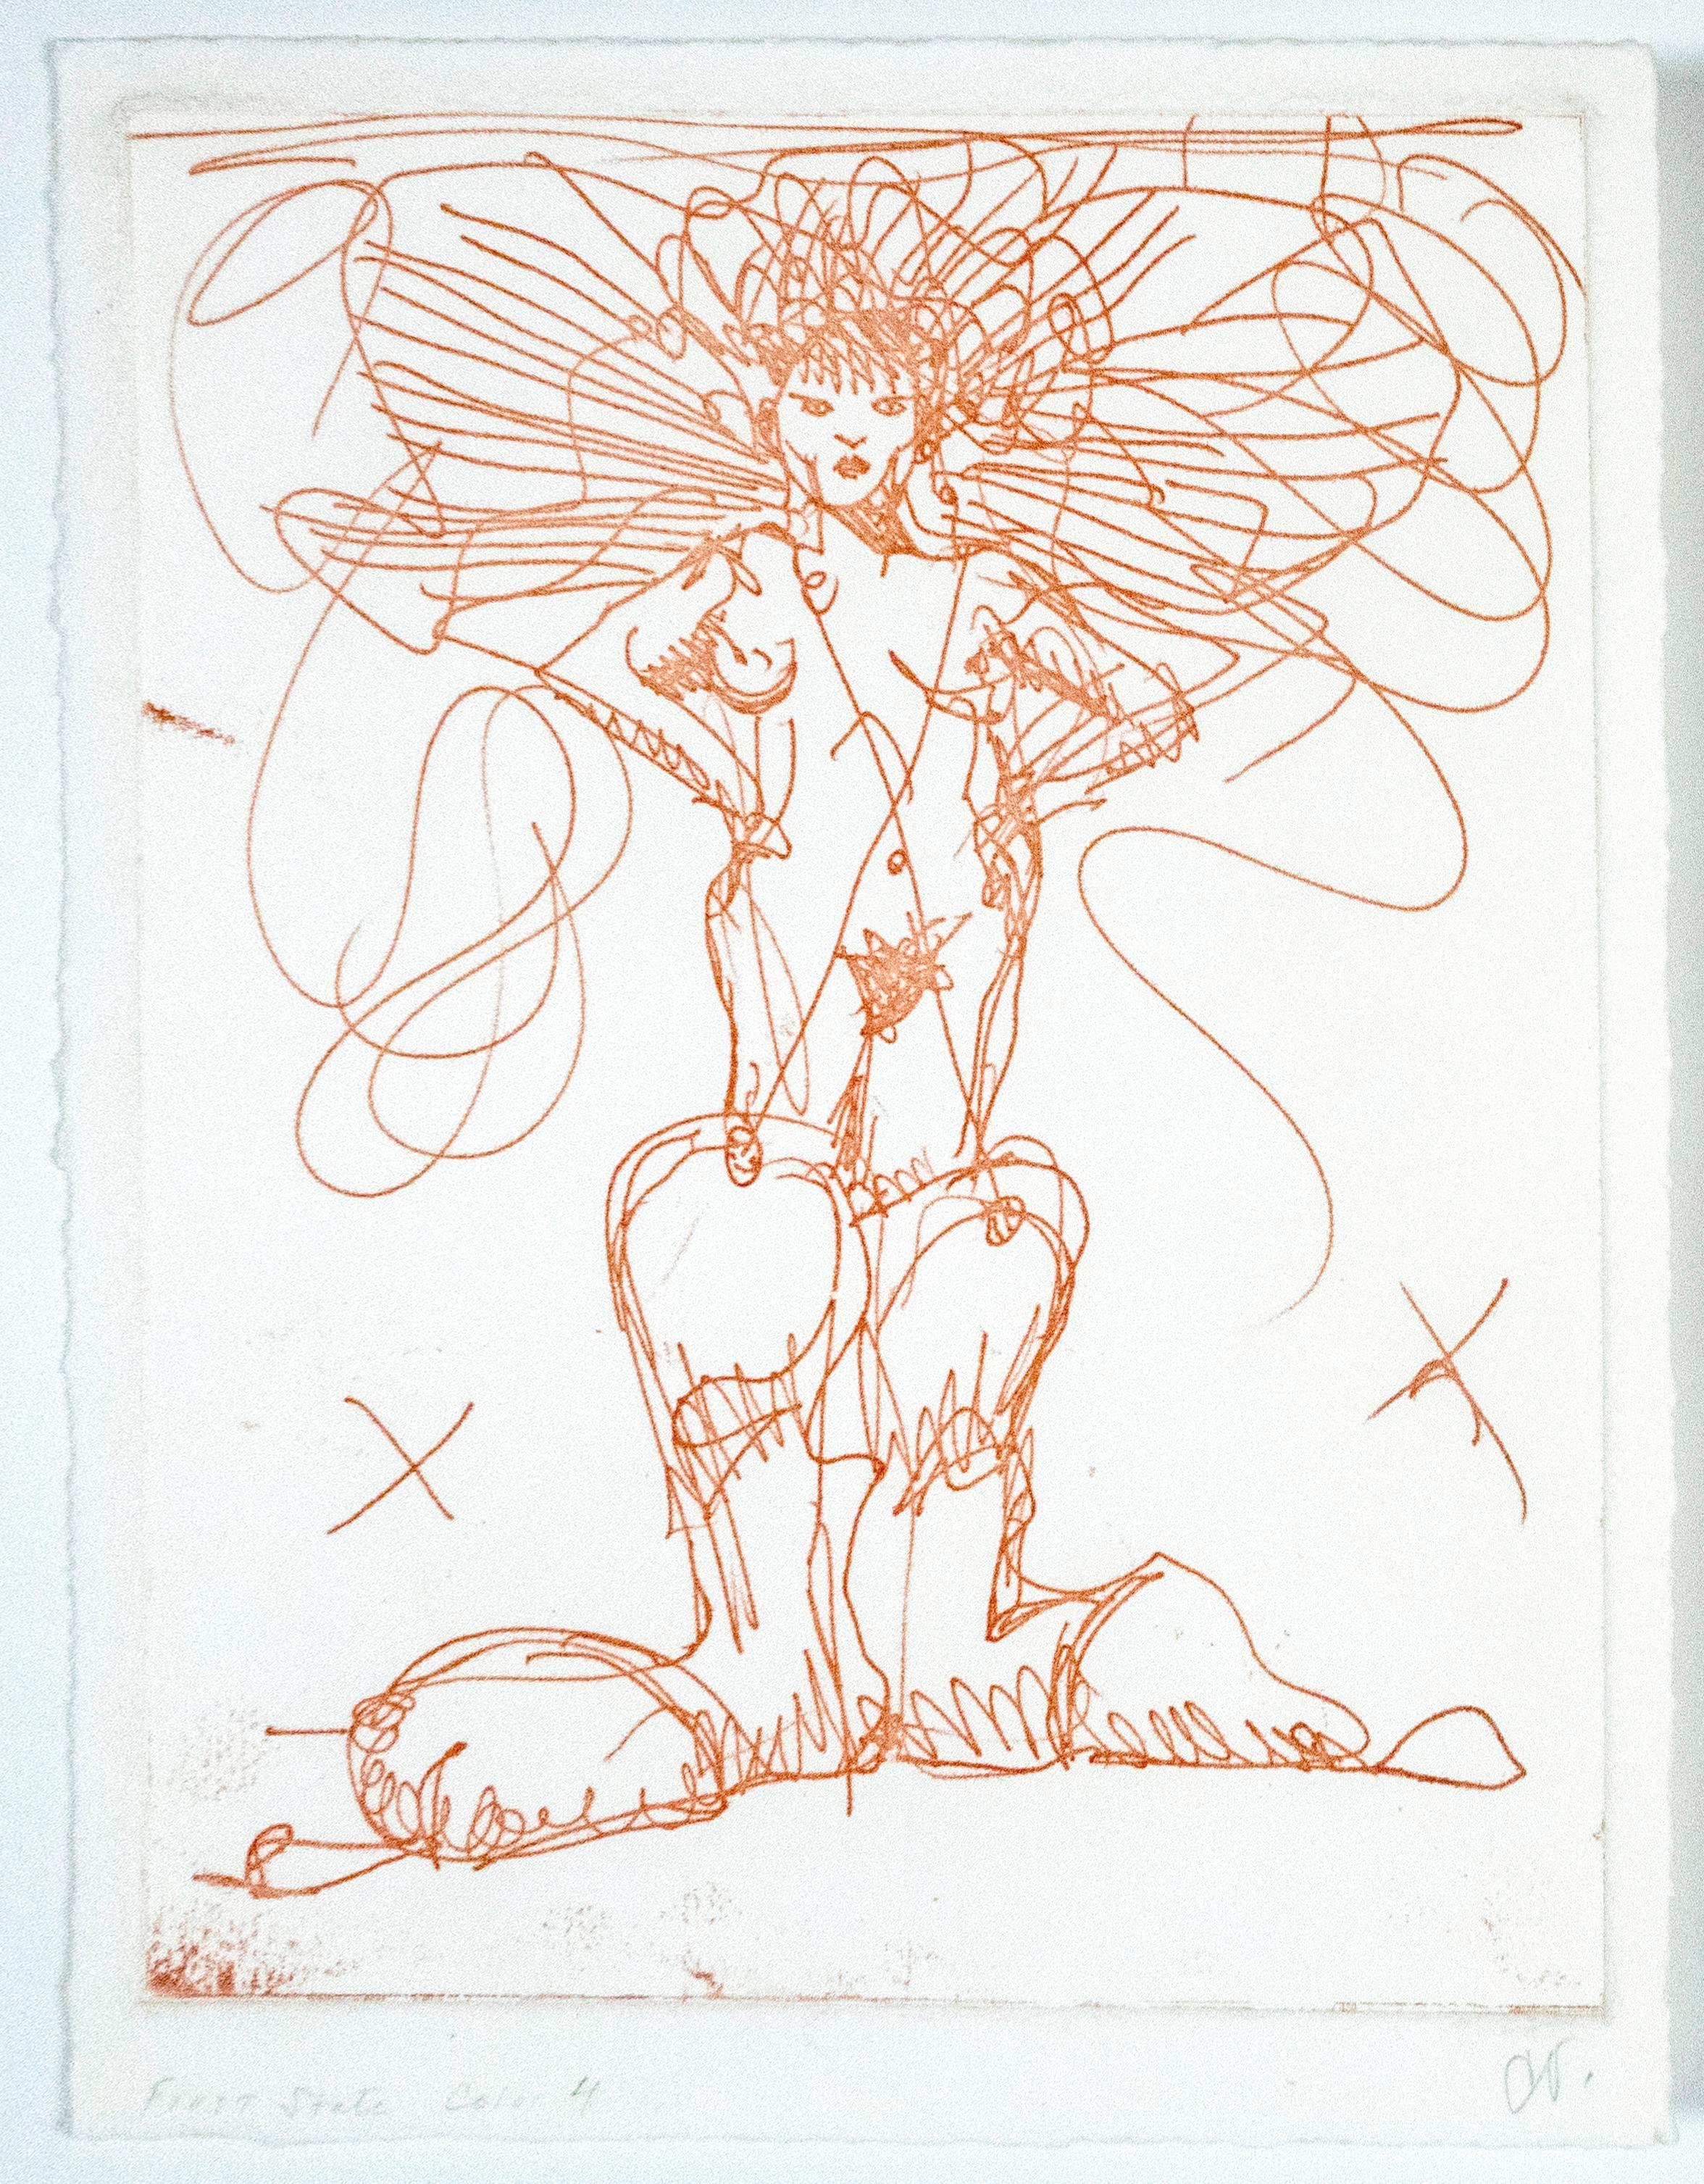 Eine einzigartige, unveröffentlichte Grafik von Claes Oldenburg. Dieser verspielte, erotische Druck ist in schimmerndem Gold gedruckt. Eine nackte Frau in überdimensionalen Cowboystiefeln steht mit den Händen in den Hüften, ein X ist auf jede Seite